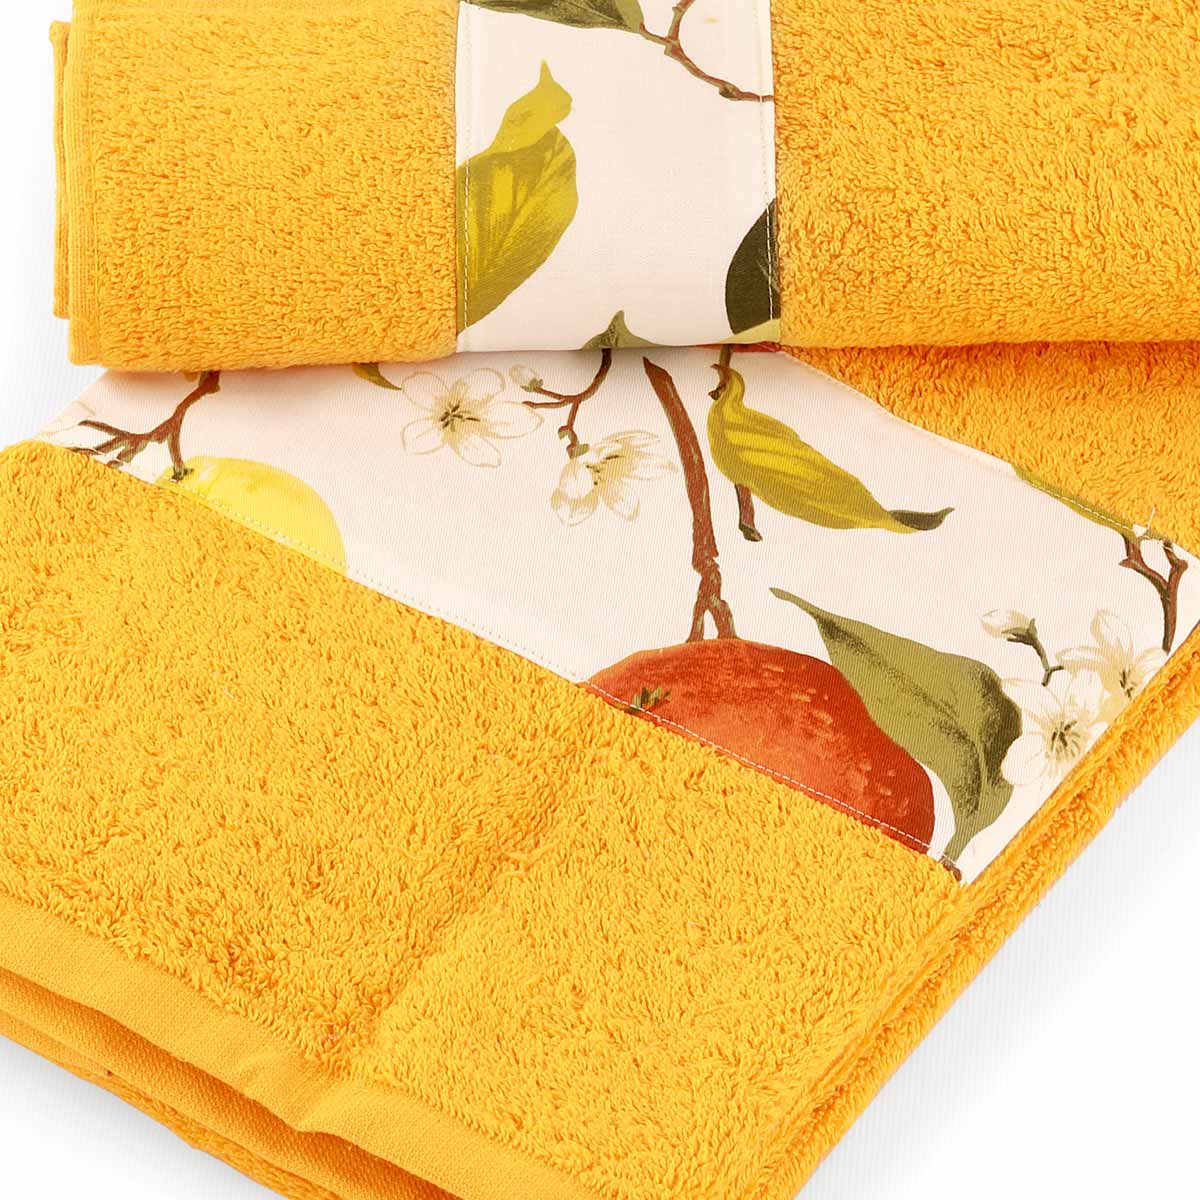 Asciugamani in spugna arancio con balza fantasia agrumi